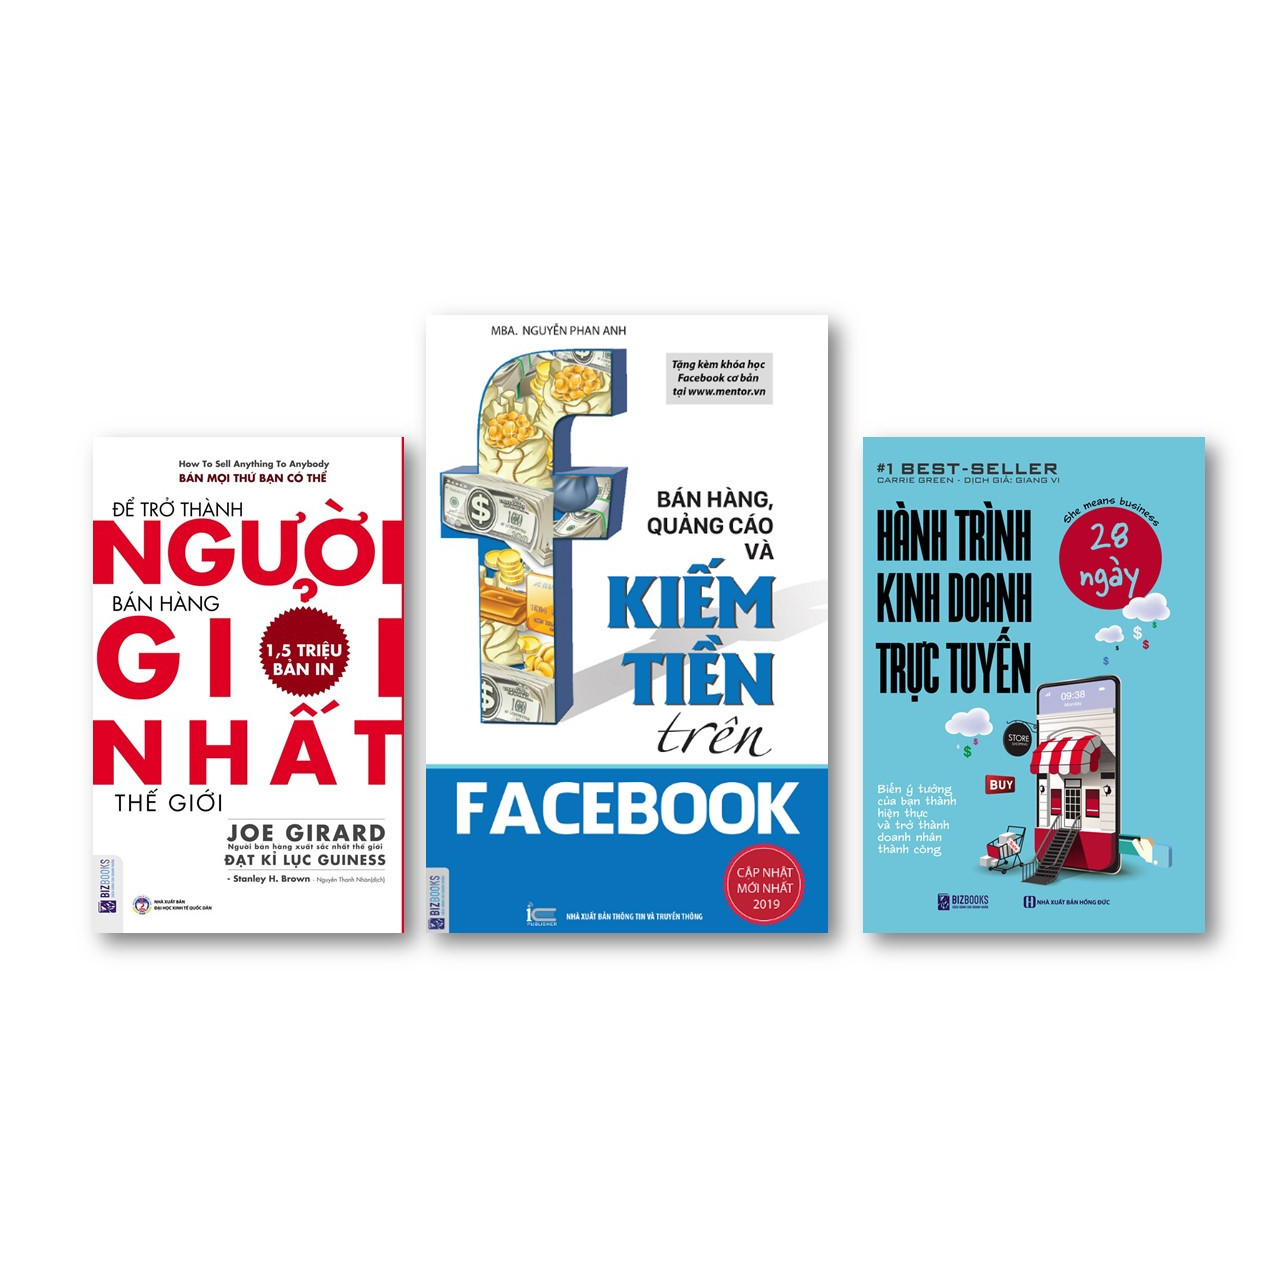 Bộ Sách Thủ Lĩnh  Kinh Doanh Trực Tuyến kt; :Để trở thành người bán hàng giỏi nhất thế giới + Bán hàng, quảng cáo và kiếm tiền trên Facebook + Hành trình kinh doanh trực tuyến 28 ngày